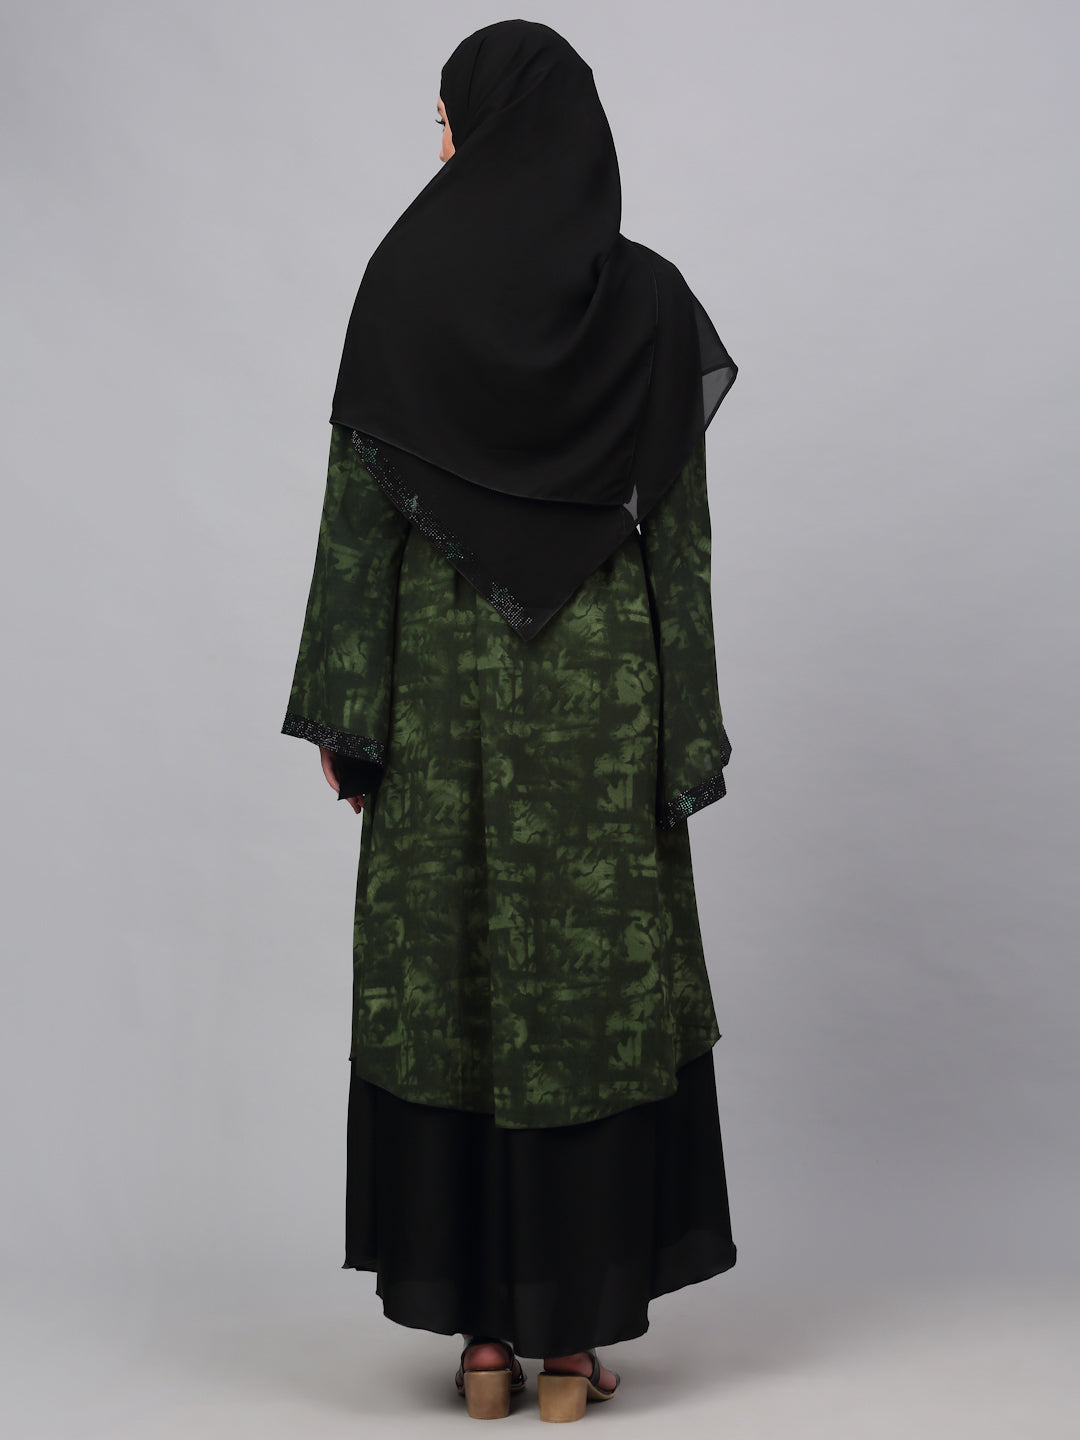 Klotthe Women Multicolor Embellished Burqa With Scarves